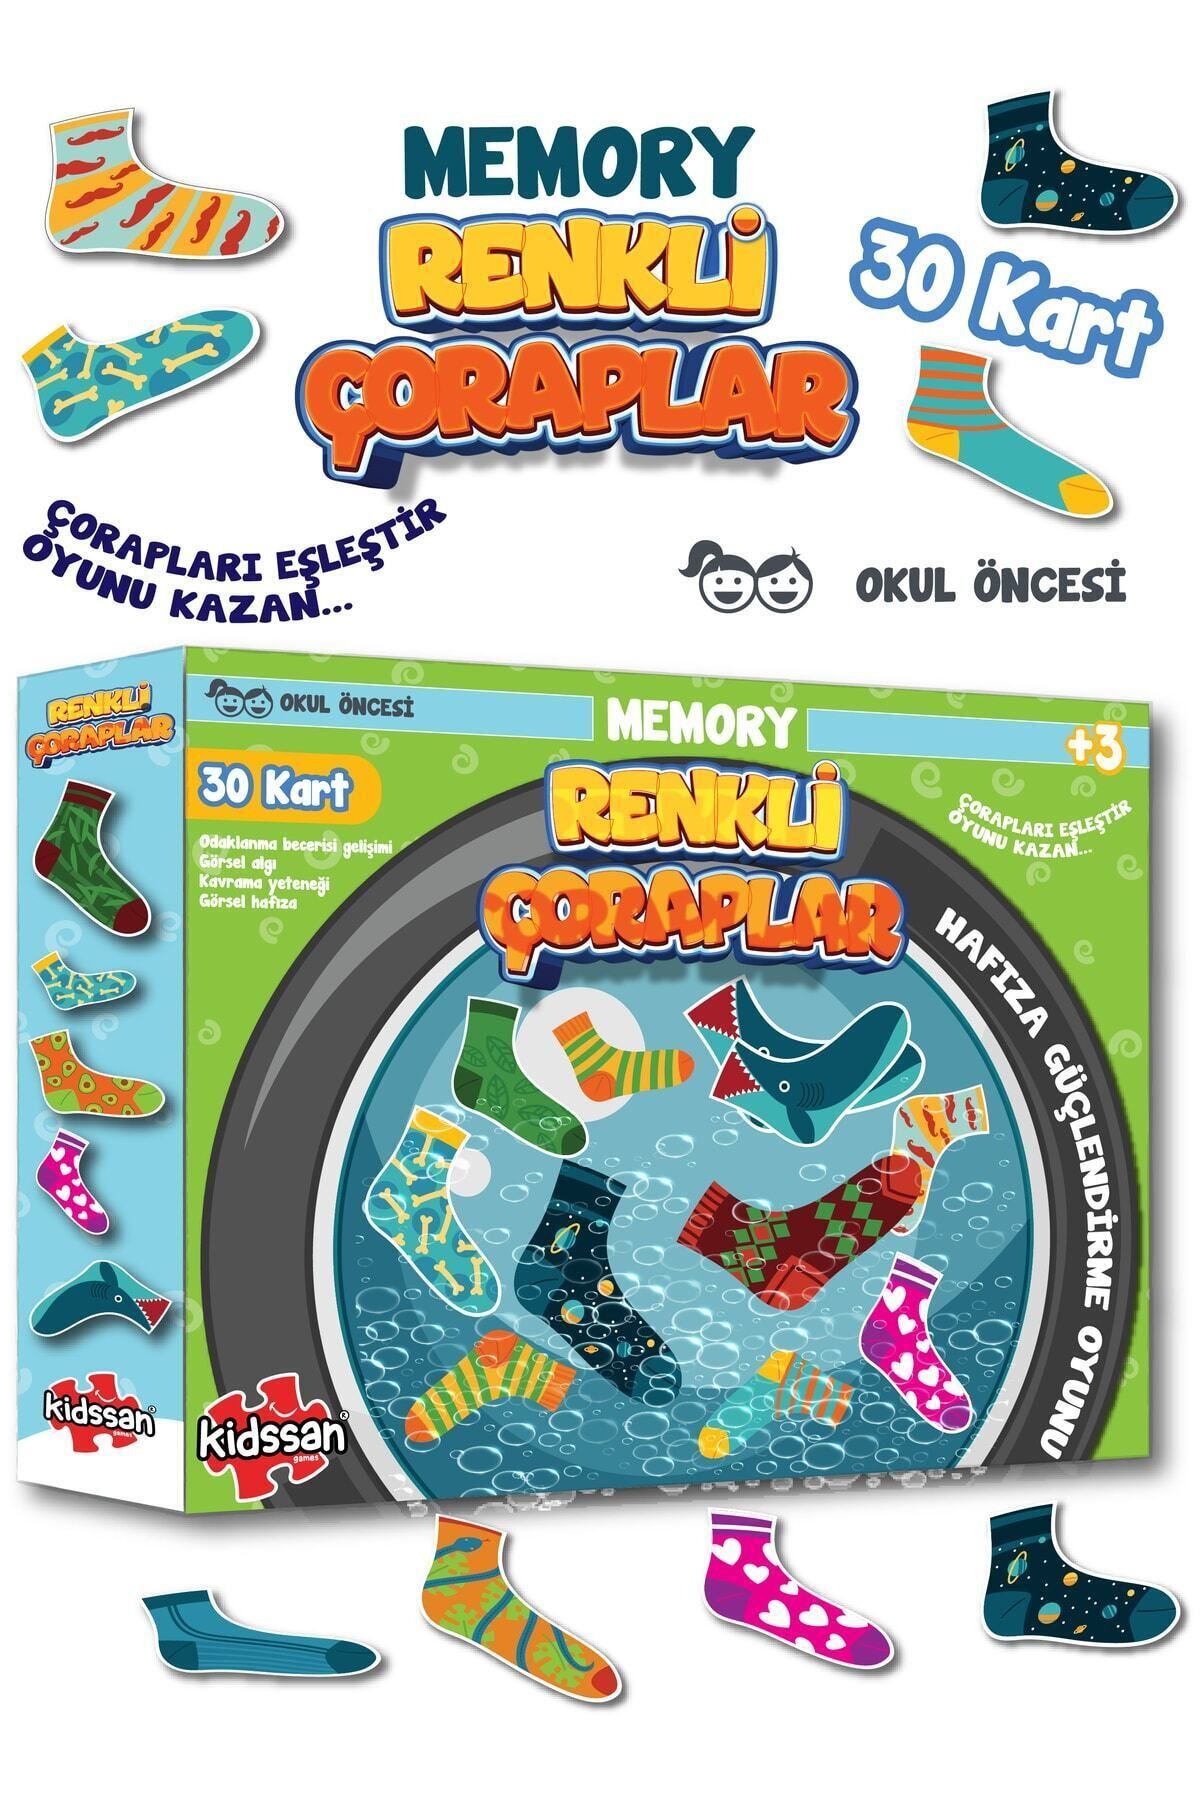 kidssan games Renkli Çoraplar Memory Hafıza Kartları Eğitici Oyunu